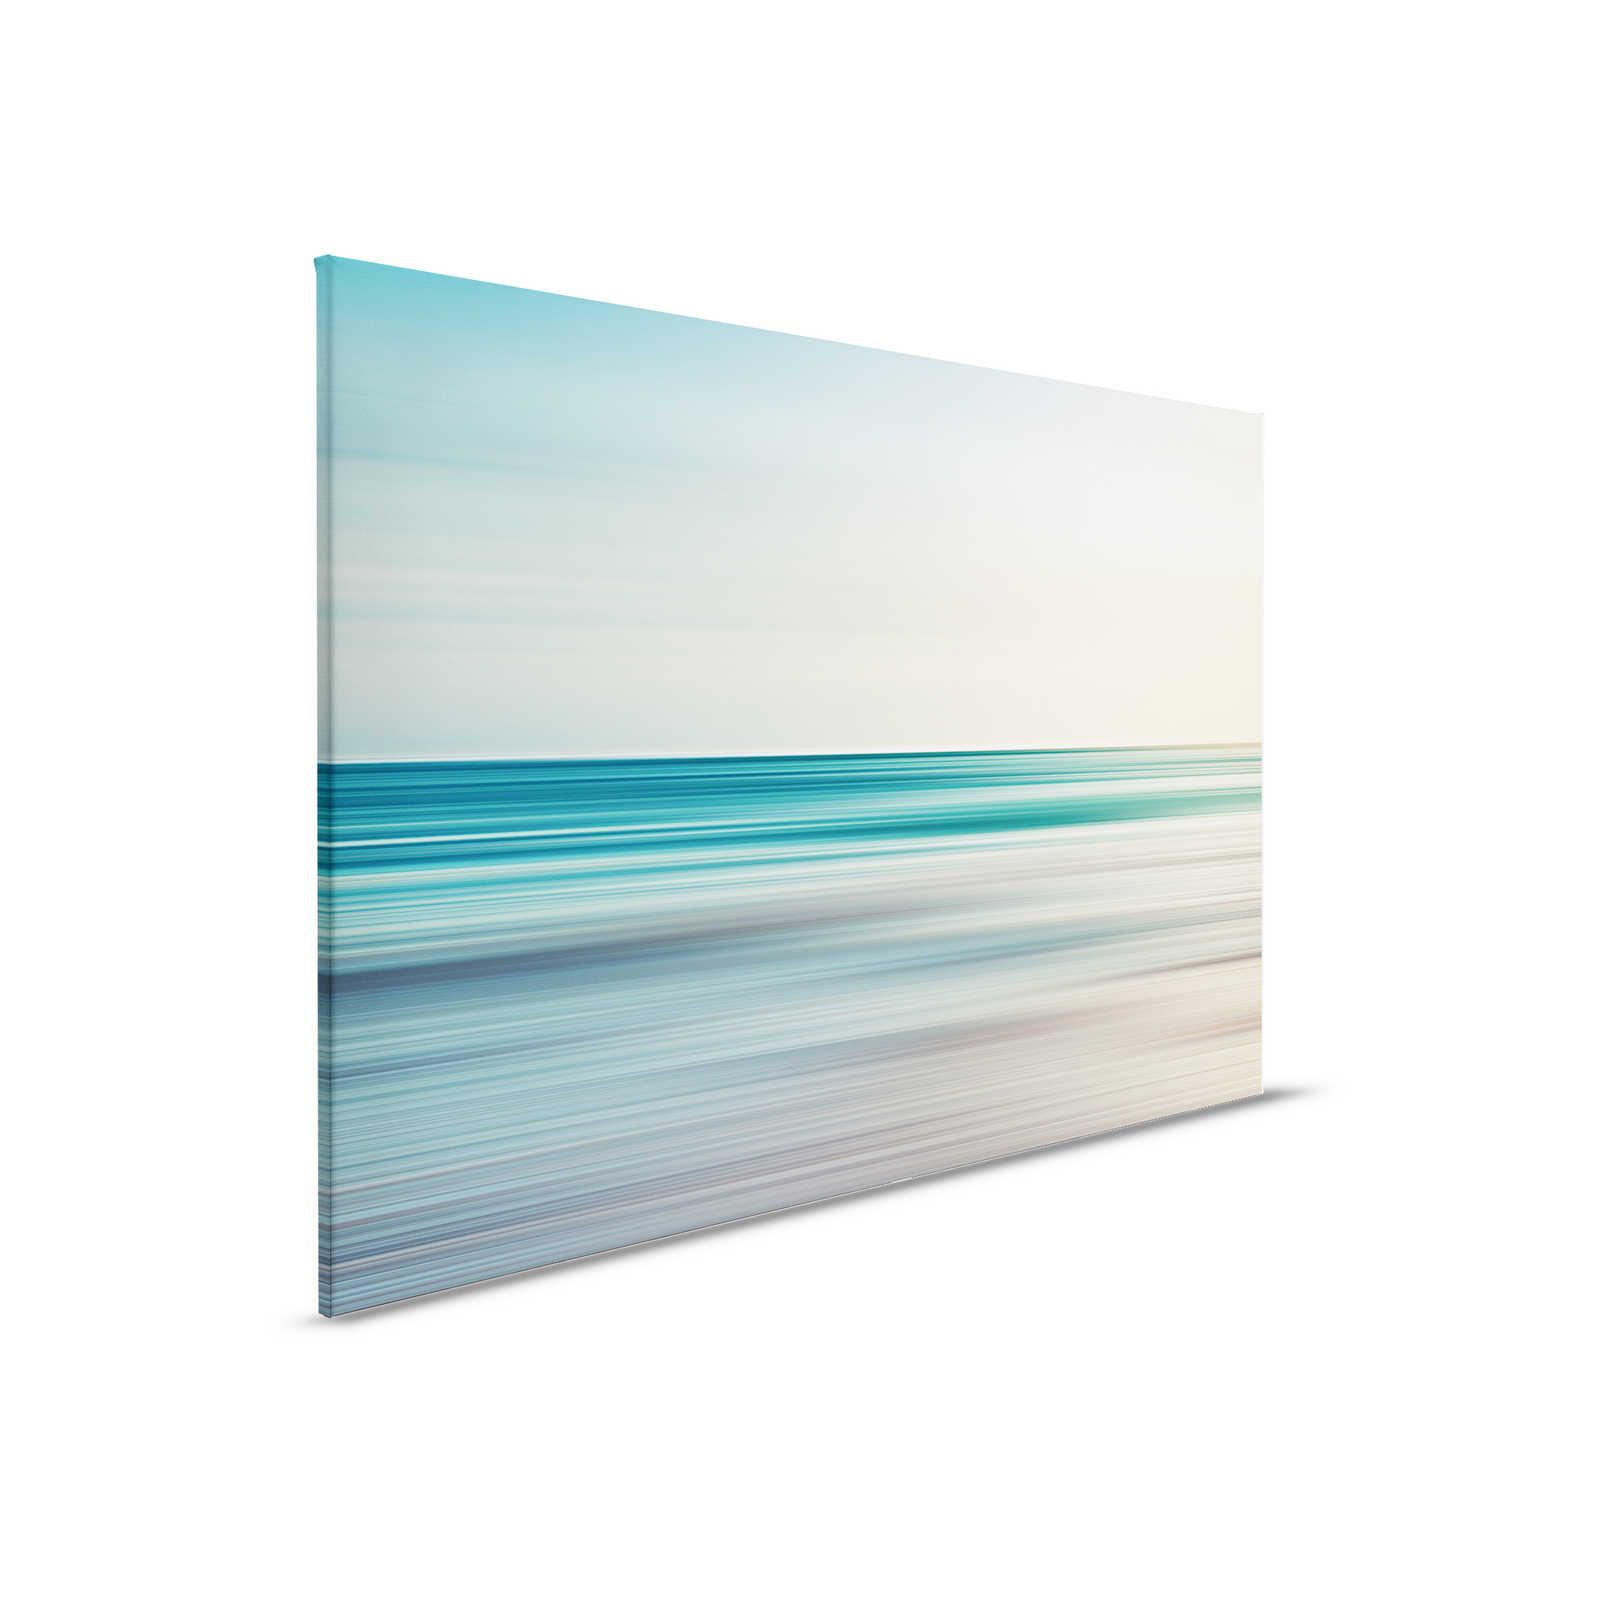         Horizon 1 - Leinwandbild abstrakte Landschaft in Blau – 0,90 m x 0,60 m
    